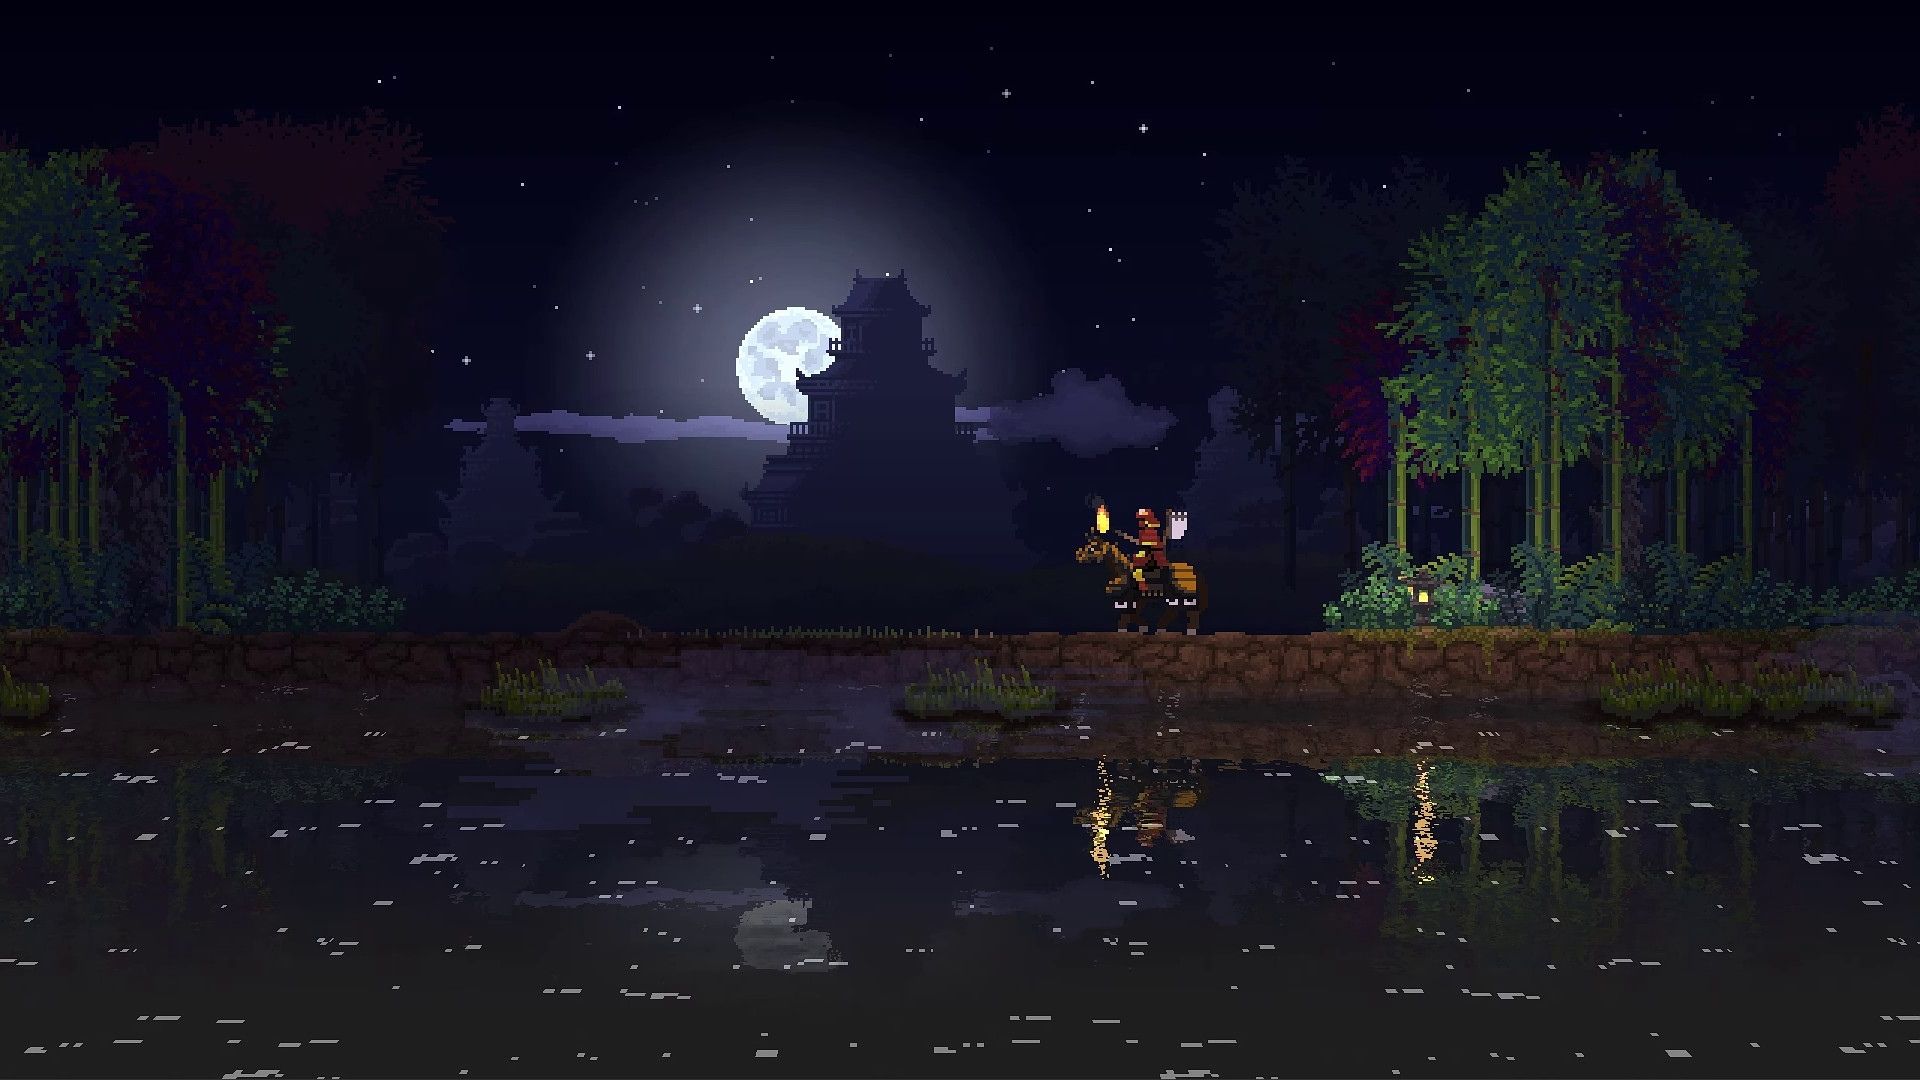 ภาพหน้าจอจากอาณาจักรสองมงกุฎแสดงให้เห็นคนบนม้าทะเลสาบและดวงจันทร์